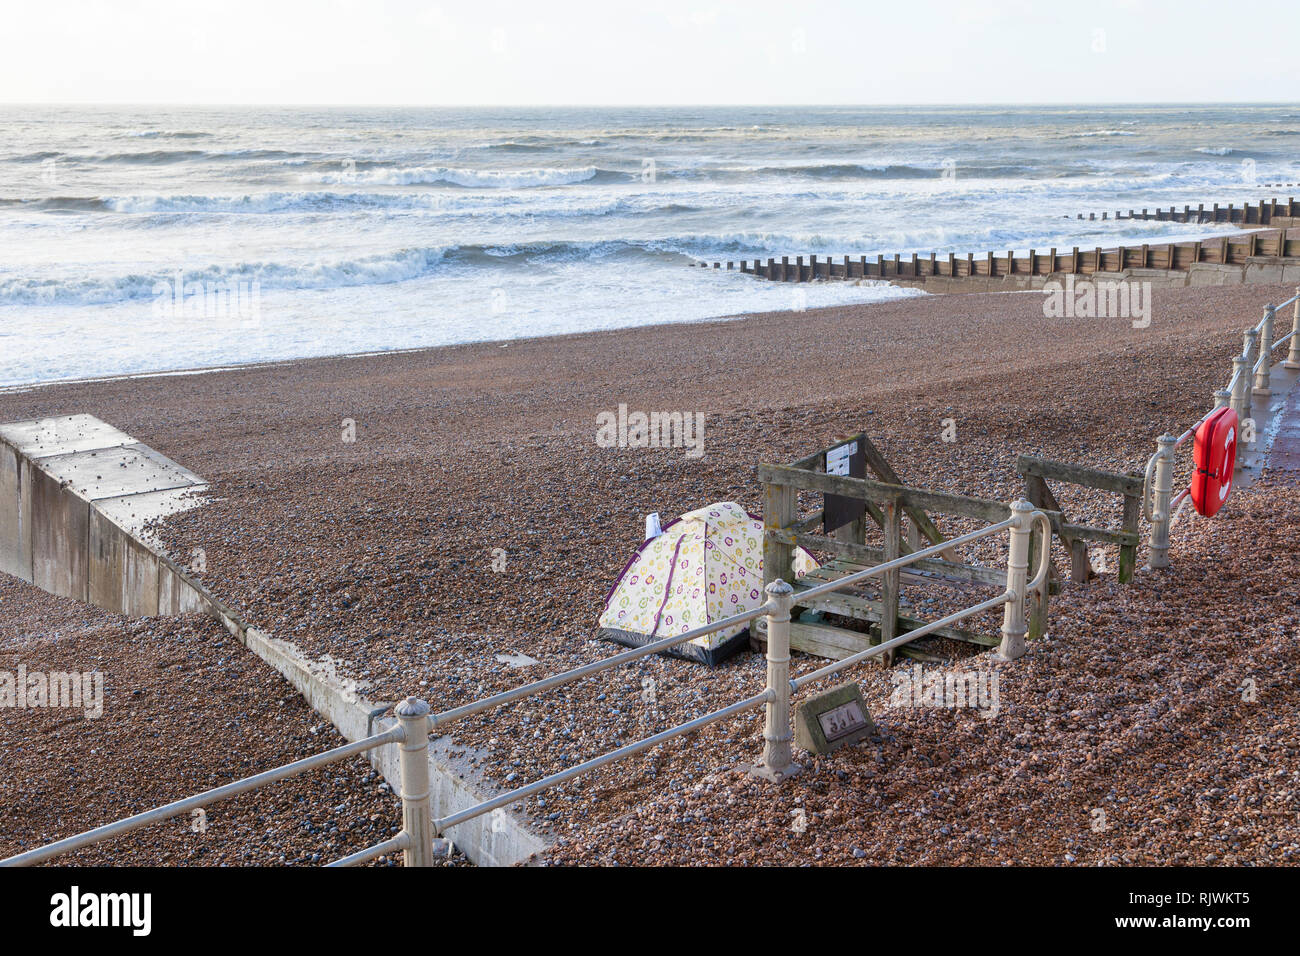 Tenda senza casa accampata sulla spiaggia nel mezzo dell'inverno, senza casa, hastings, sussex orientale, regno unito Foto Stock